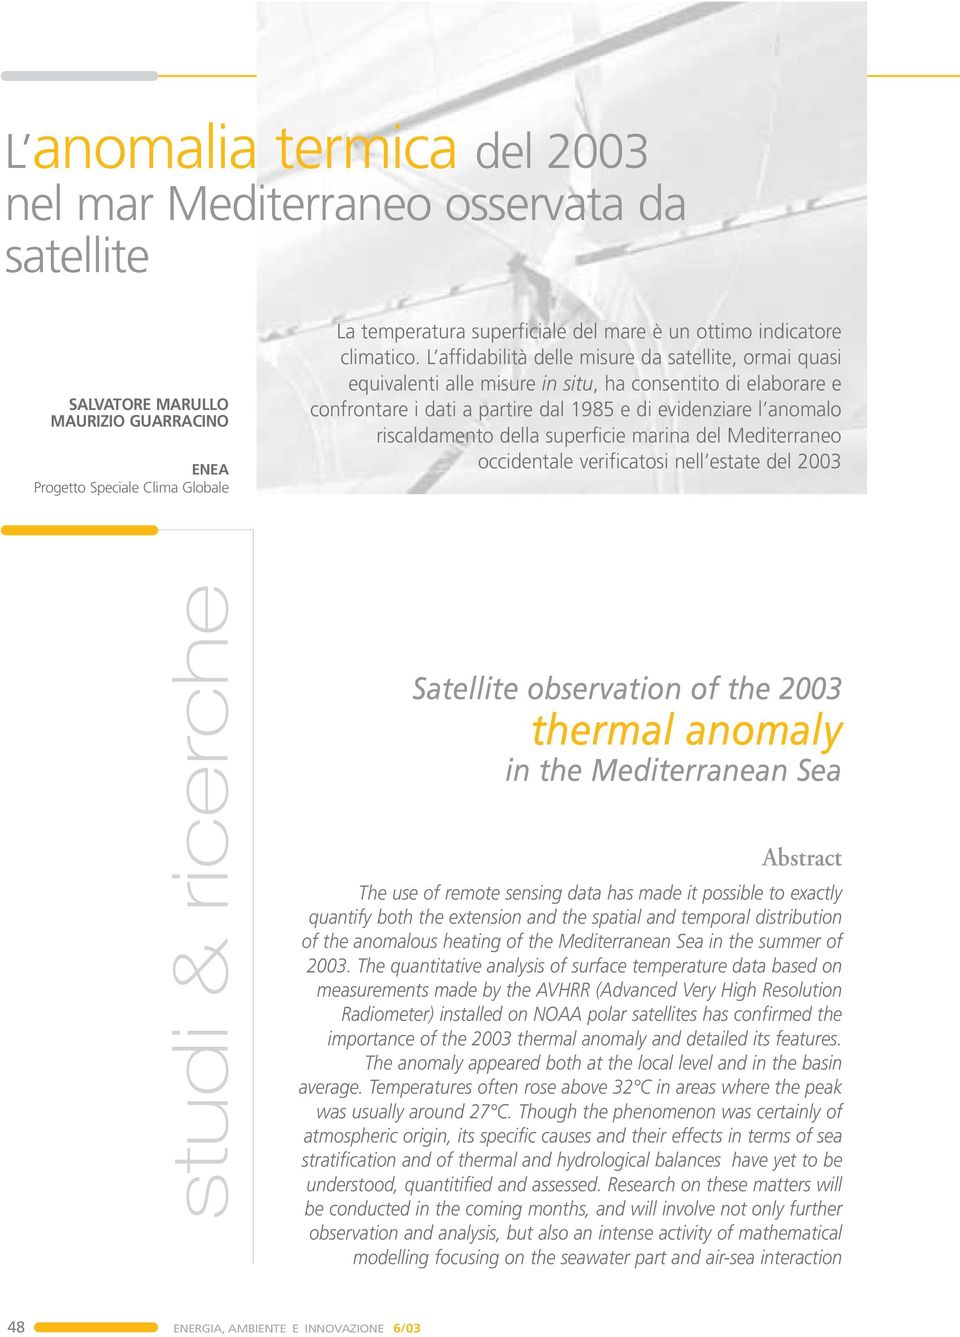 L affidabilità delle misure da satellite, ormai quasi equivalenti alle misure in situ, ha consentito di elaborare e confrontare i dati a partire dal 1985 e di evidenziare l anomalo riscaldamento